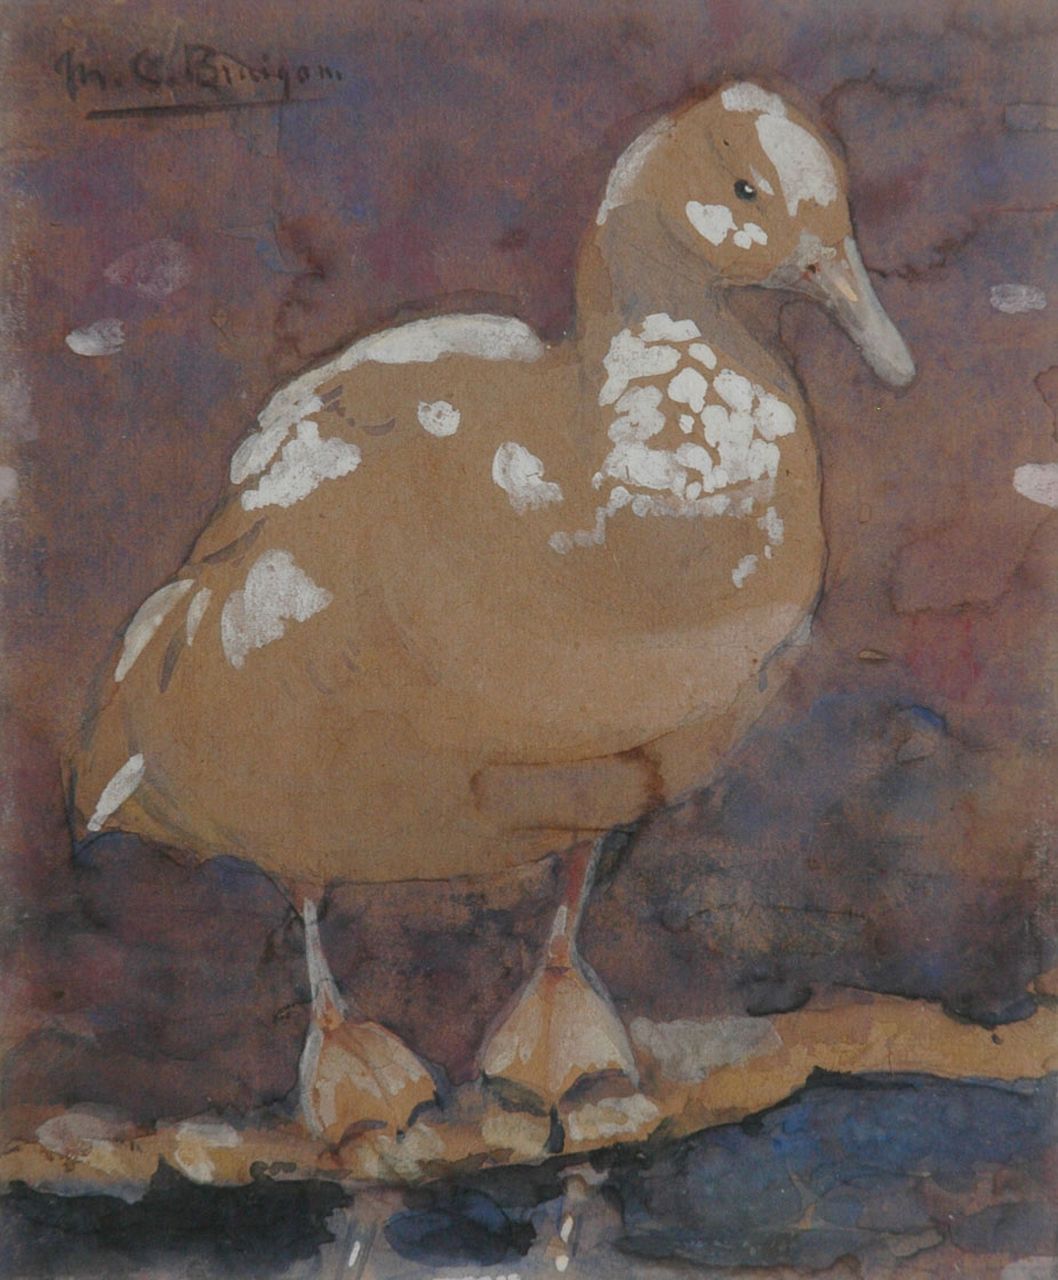 Bruigom M.C.  | Margaretha Cornelia 'Greta' Bruigom, Eend, aquarel op papier 17,5 x 14,4 cm, gesigneerd linksboven